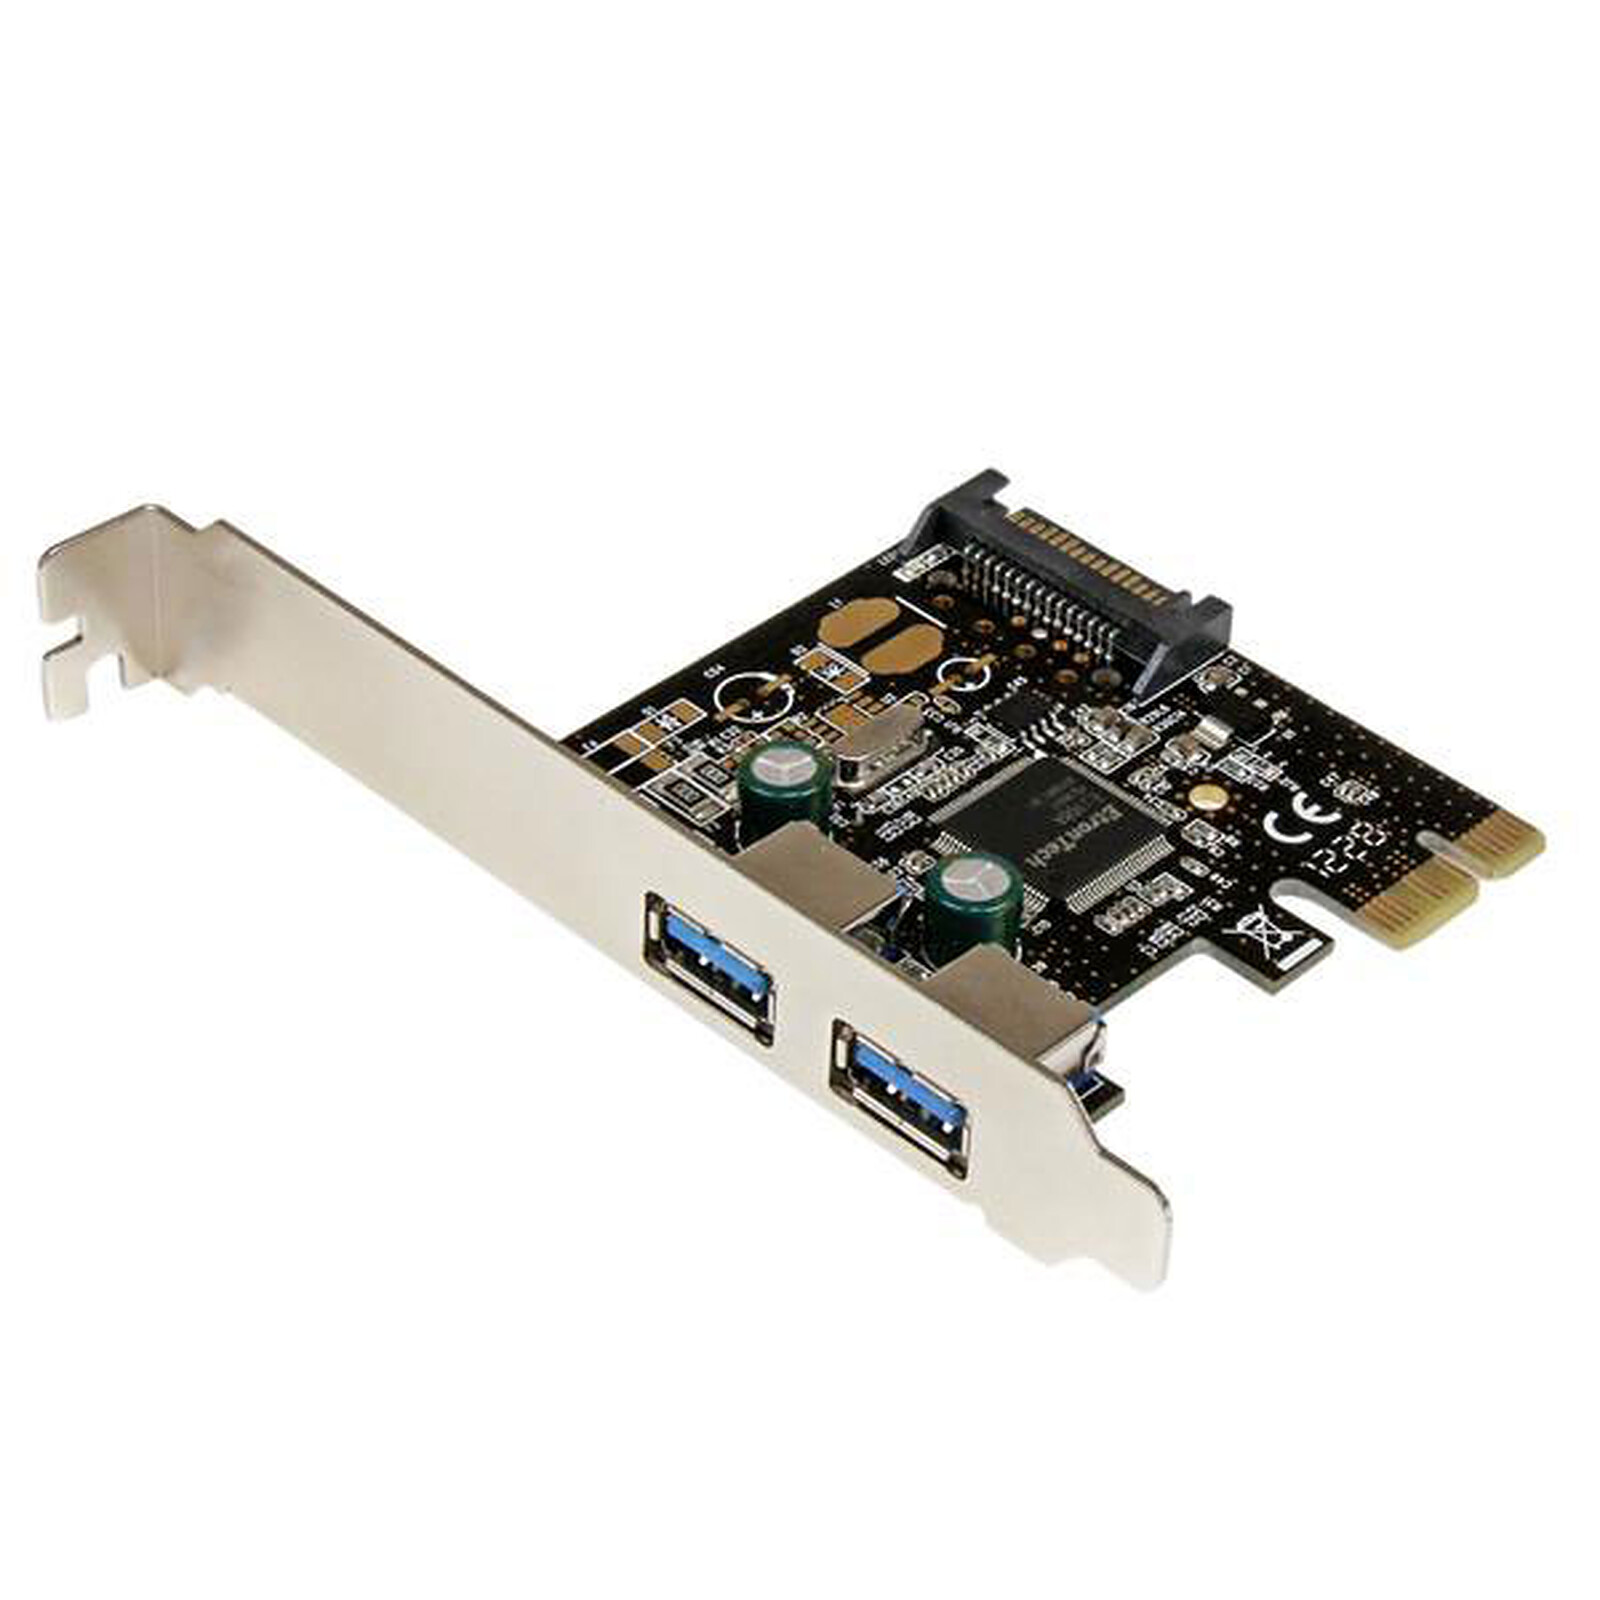 StarTech.com Lecteur de cartes CFast 2.0 - USB 3.0 - Lecteur carte mémoire  - Garantie 3 ans LDLC